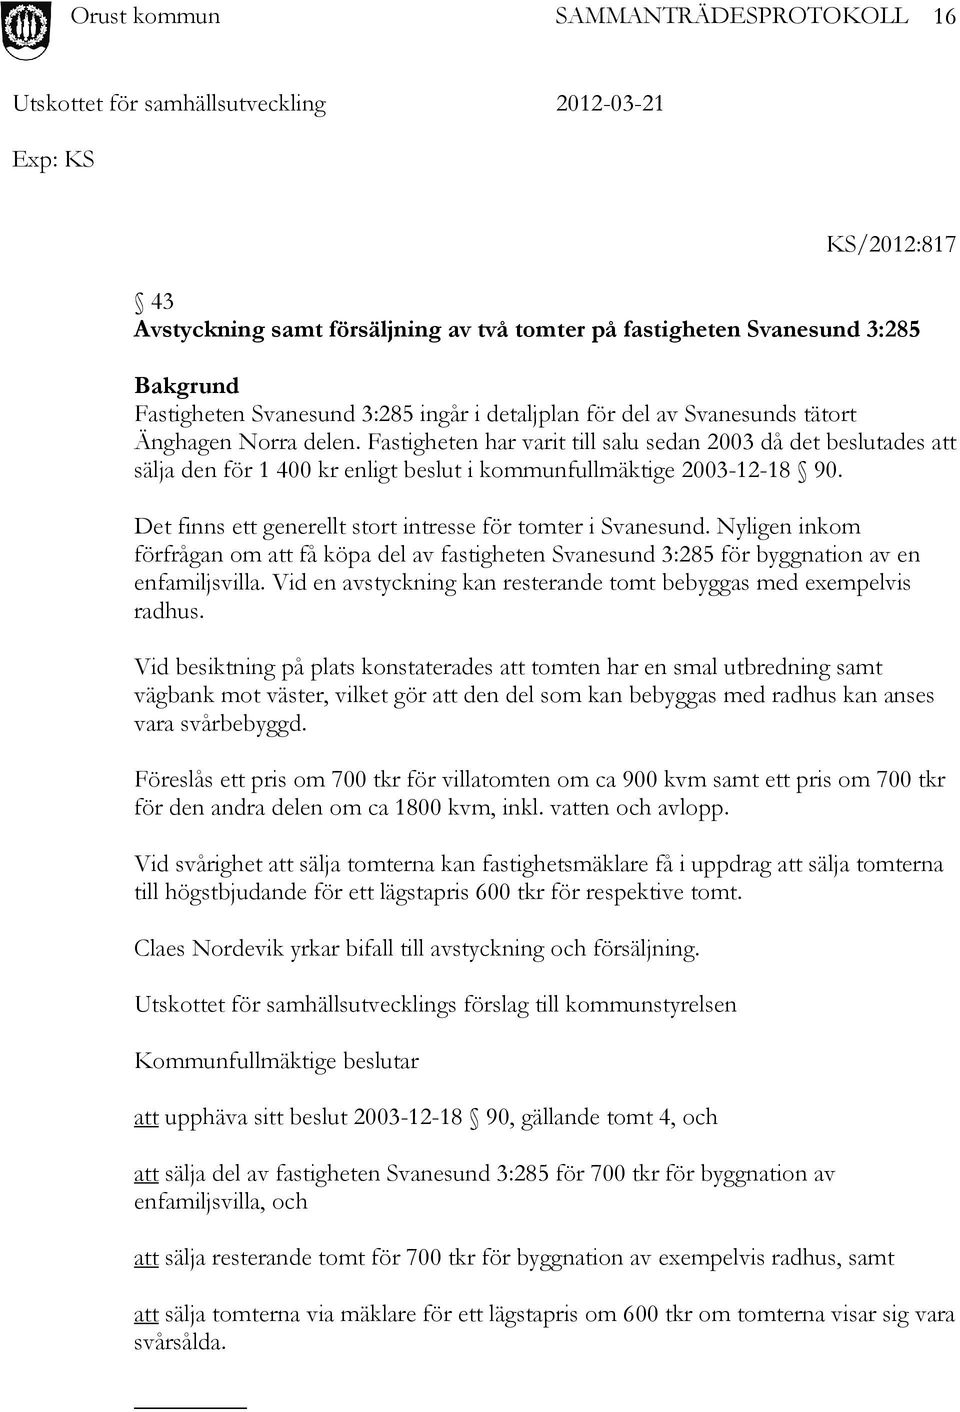 Det finns ett generellt stort intresse för tomter i Svanesund. Nyligen inkom förfrågan om att få köpa del av fastigheten Svanesund 3:285 för byggnation av en enfamiljsvilla.